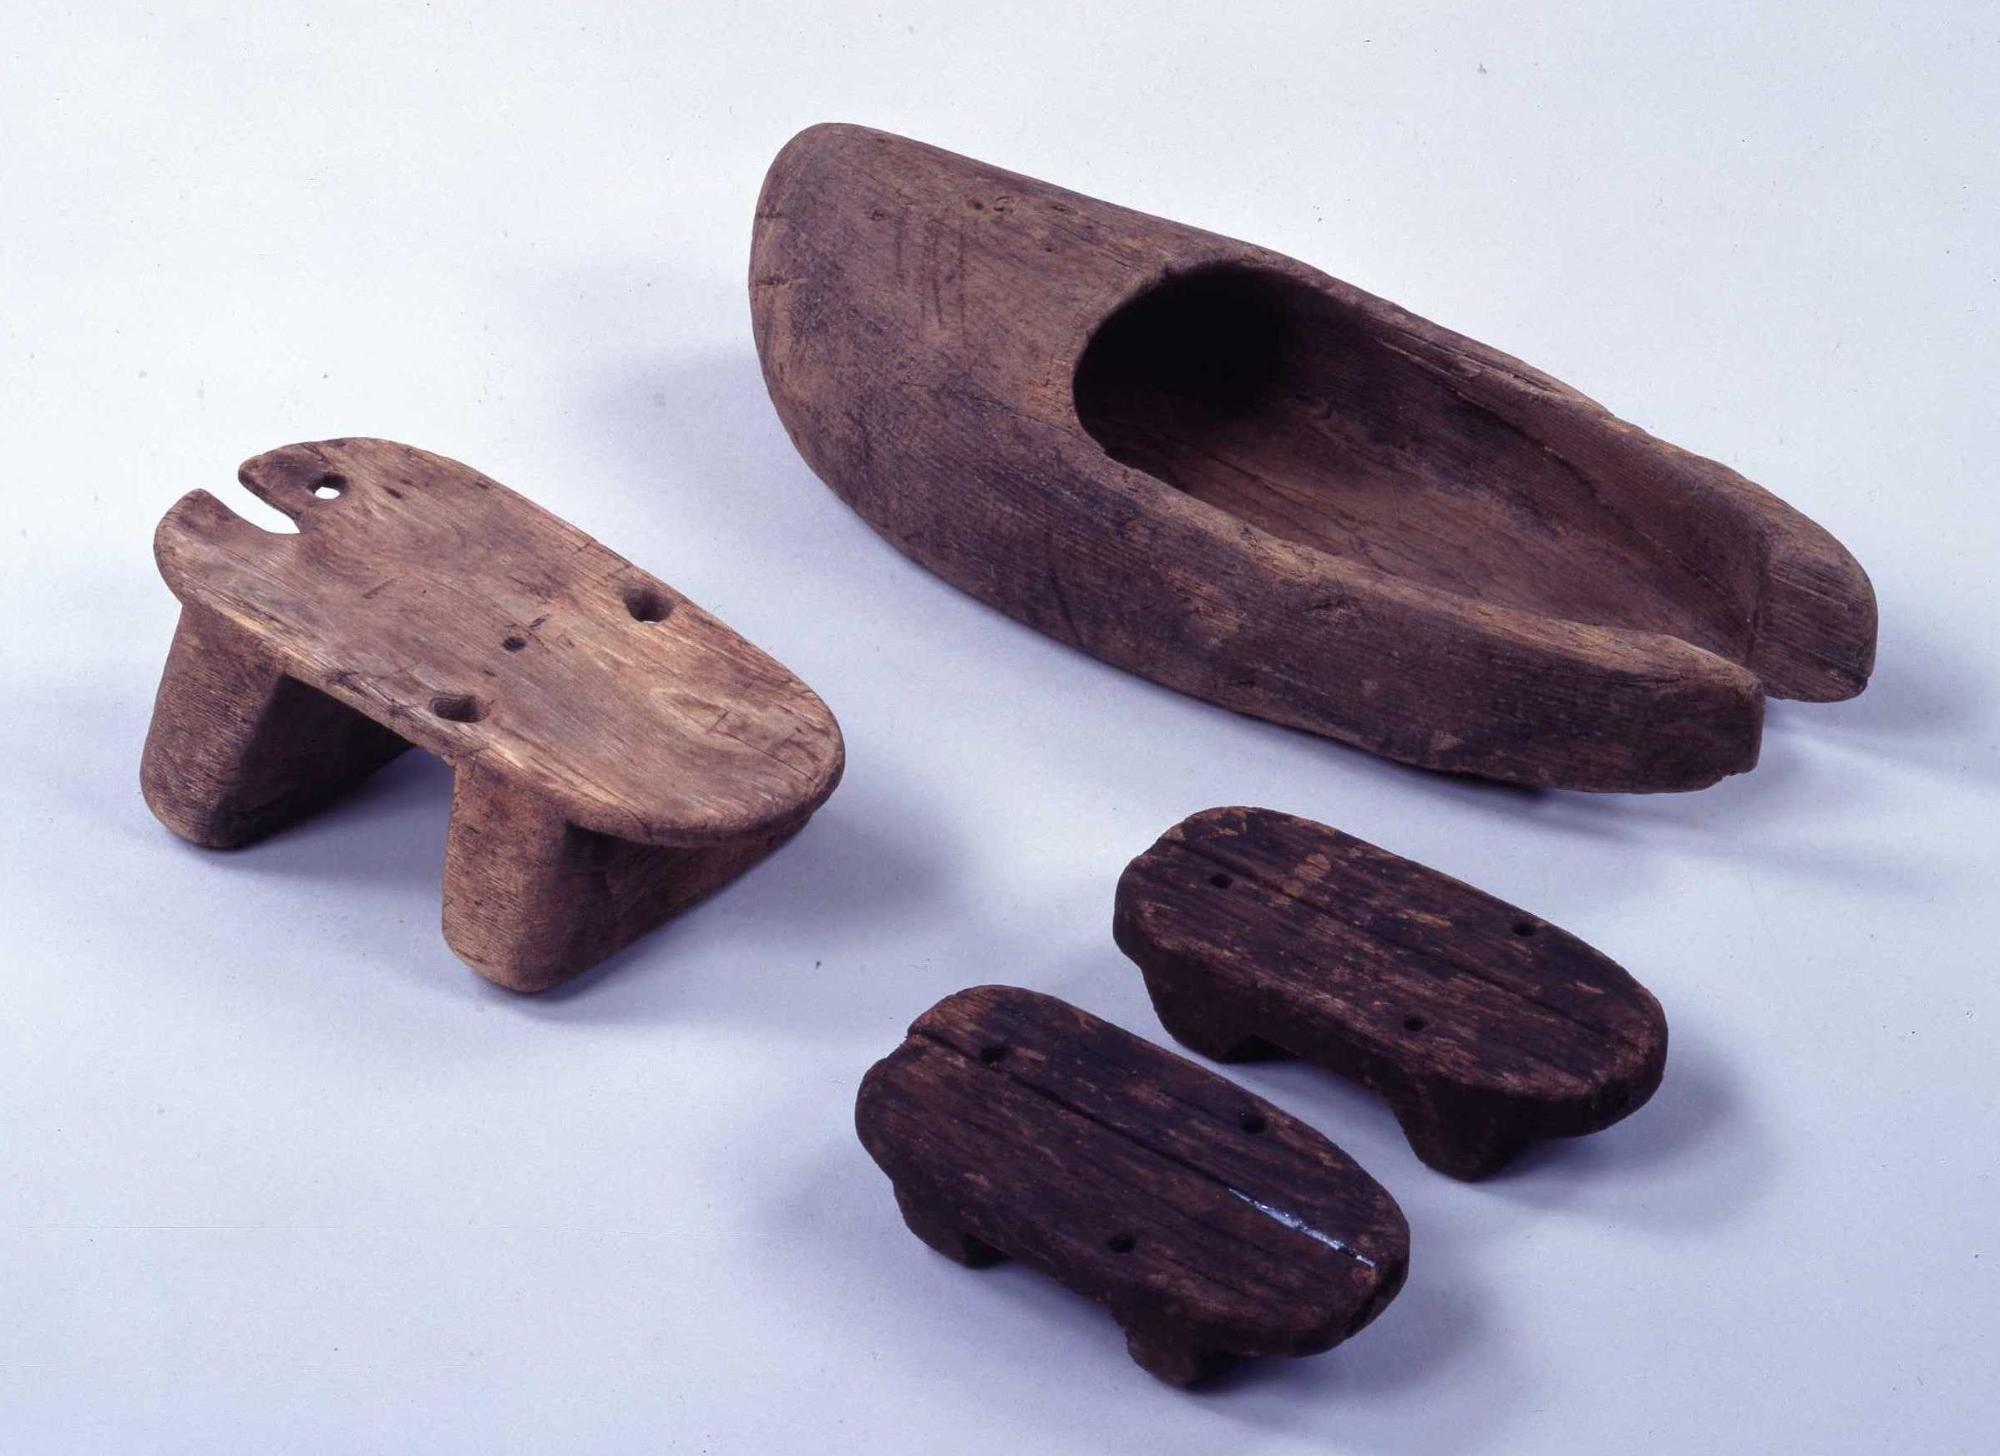 鴨遺跡から出土した靴や下駄の形をしている木製品の写真